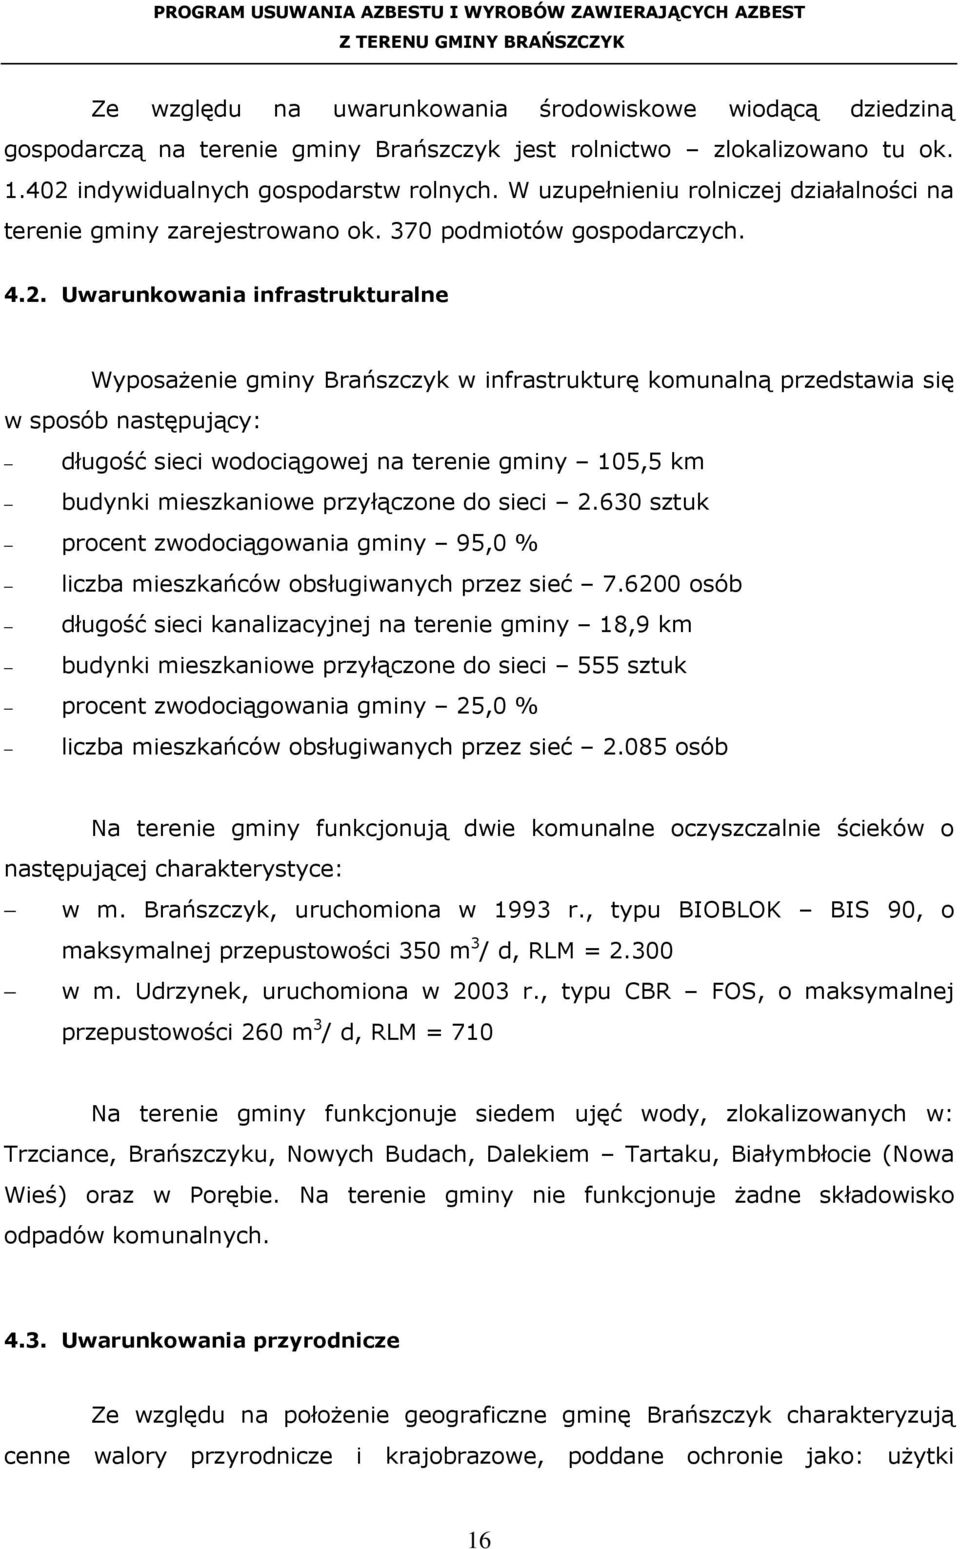 Uwarunkowania infrastrukturalne WyposaŜenie gminy Brańszczyk w infrastrukturę komunalną przedstawia się w sposób następujący: długość sieci wodociągowej na terenie gminy 105,5 km budynki mieszkaniowe